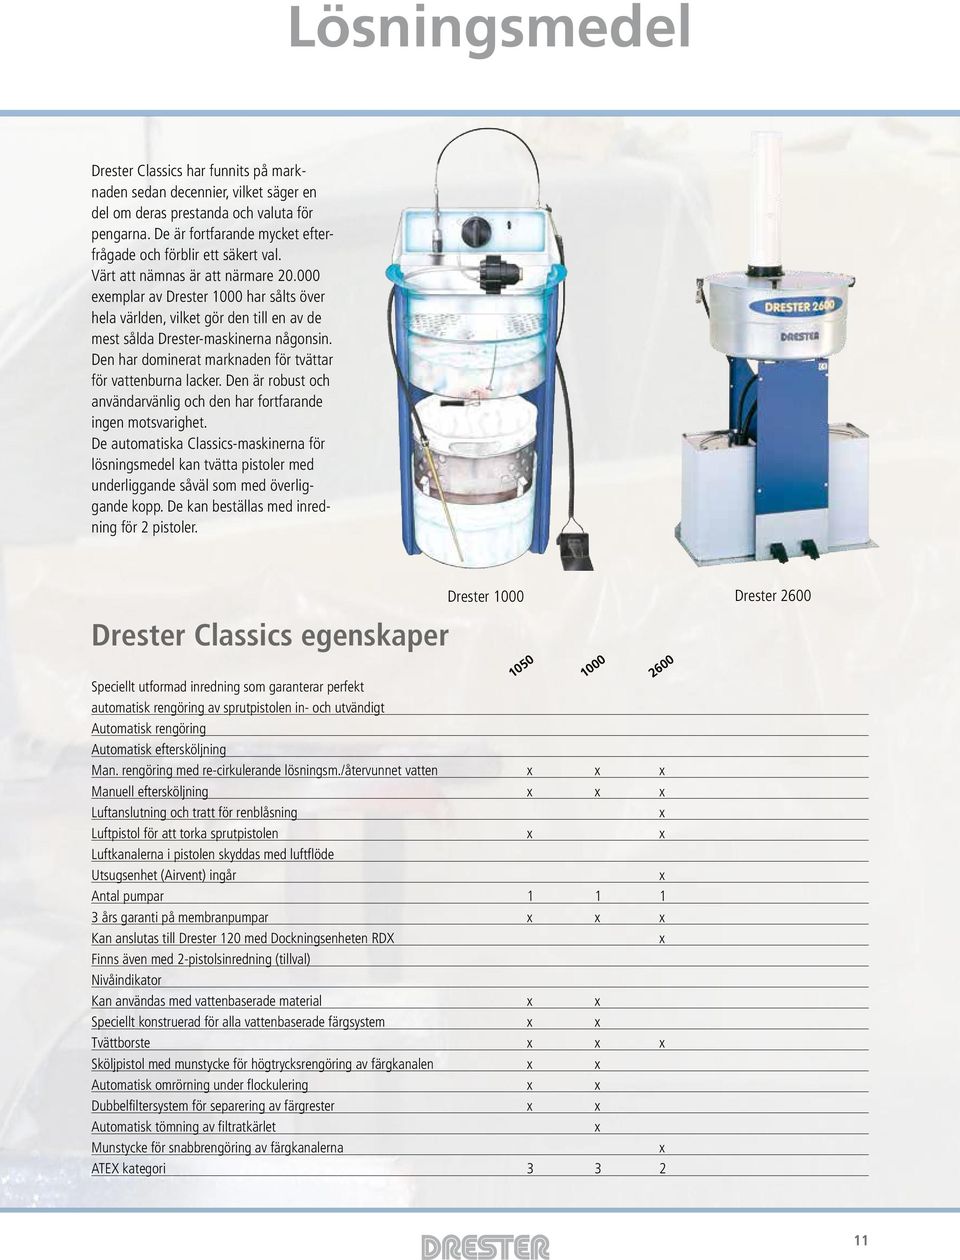 000 exemplar av Drester 1000 har sålts över hela världen, vilket gör den till en av de mest sålda Drester-maskinerna någonsin. Den har dominerat marknaden för tvättar för vattenburna lacker.